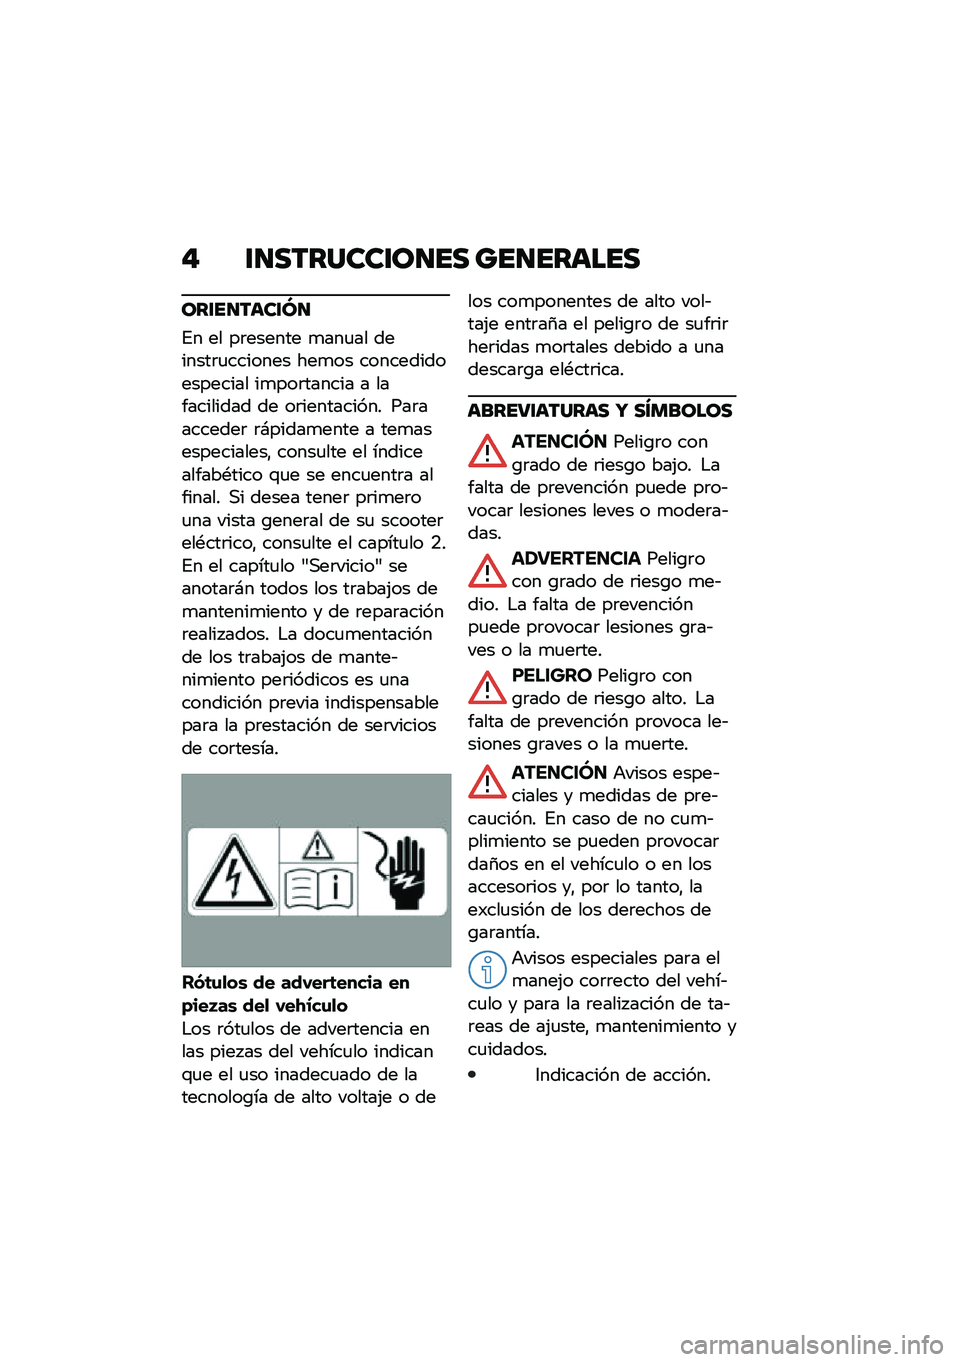 BMW MOTORRAD CE 04 2021  Manual de instrucciones (in Spanish) �" �\f�
�������\f��
�� ���
������
���\f��
����\f�M�
�%� �� ��	������ �
���
�� �������	�
������� ���
�� ����������������� ��
��